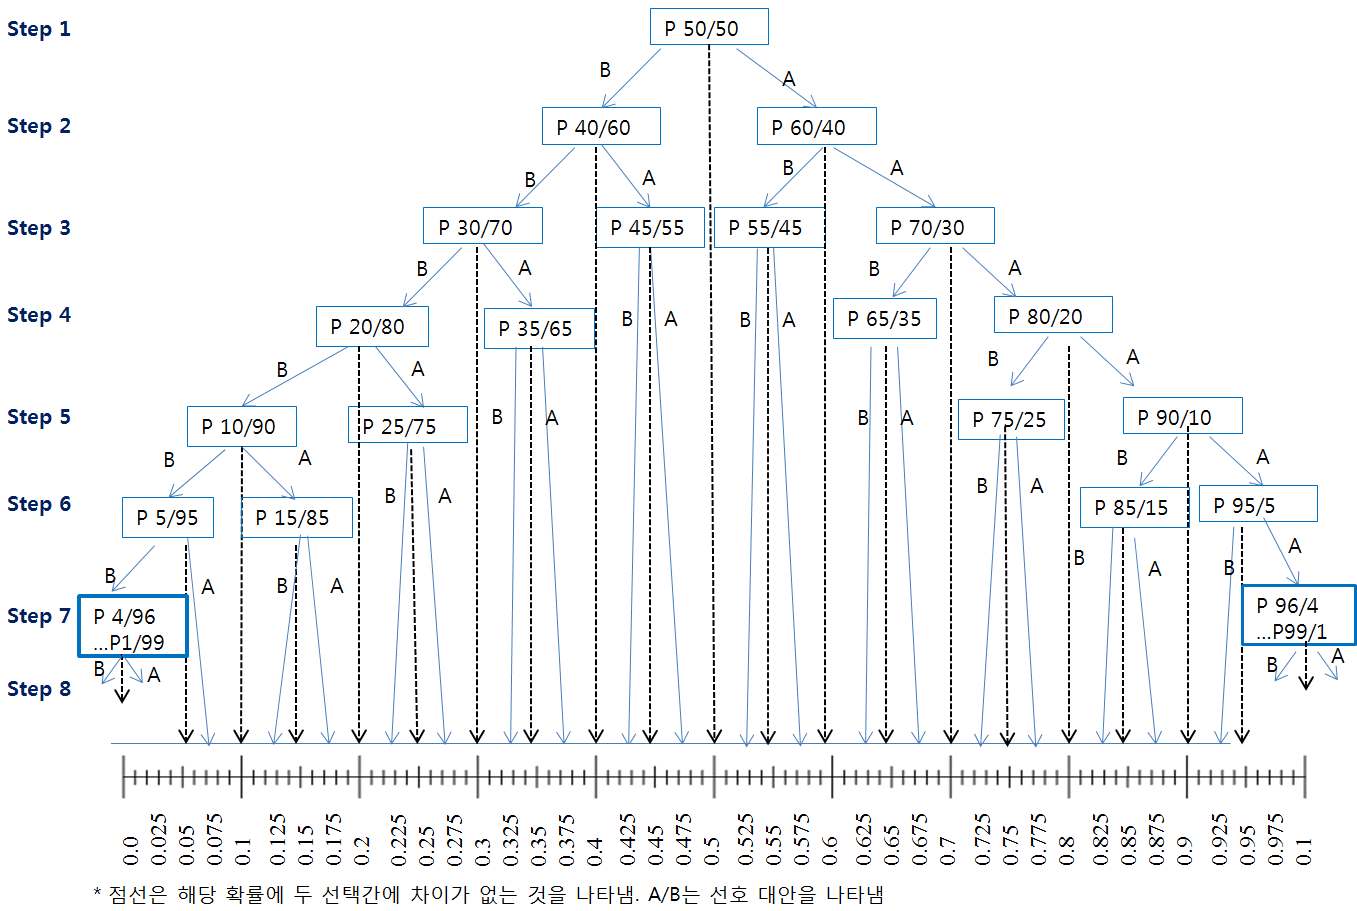 그림 10. 확률판으로부터 선호도 점수를 결정하는 단계 도식표.